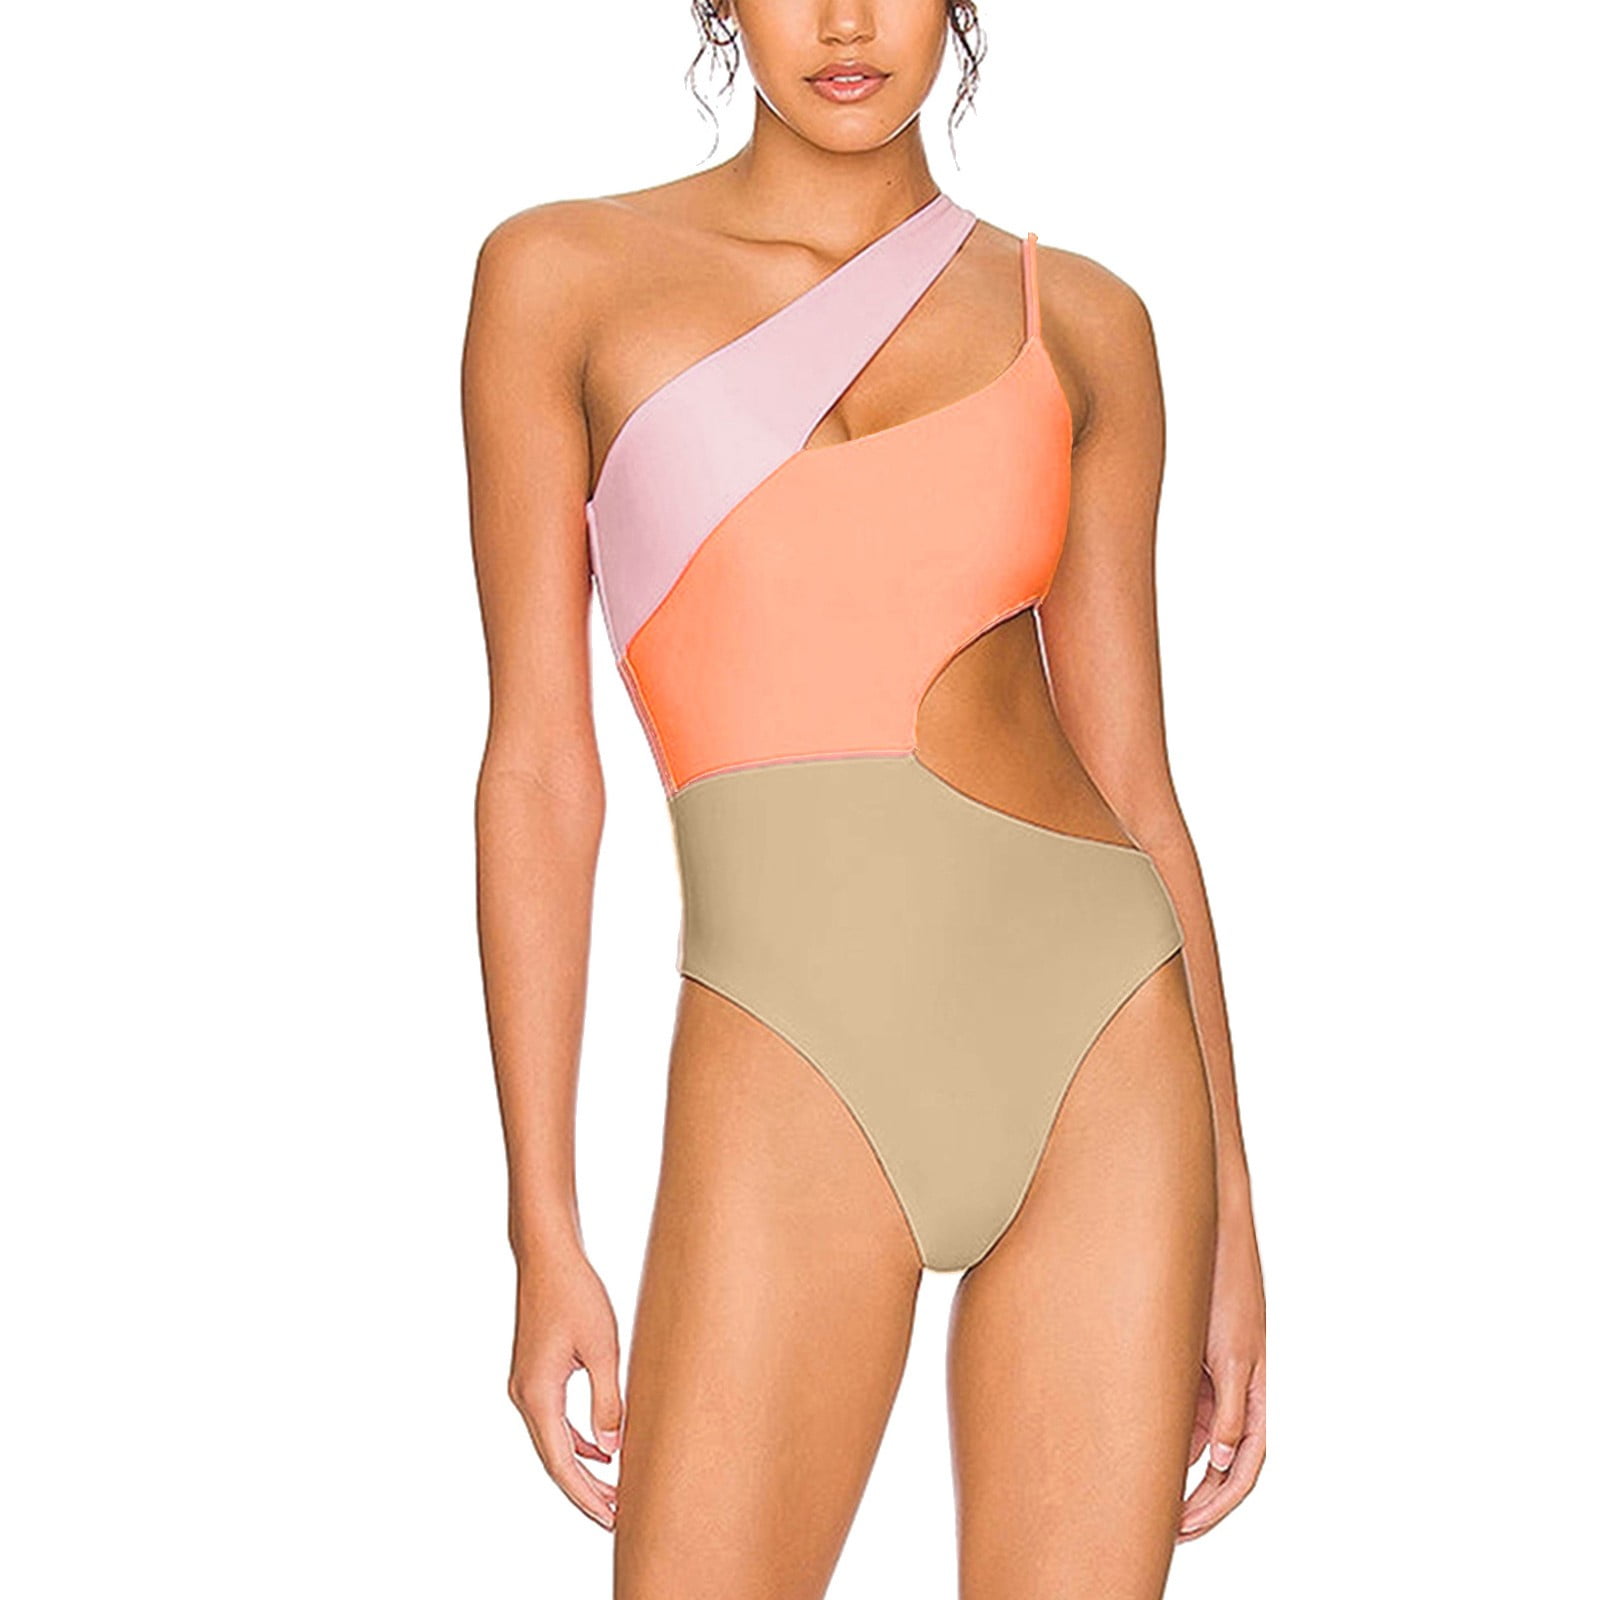 LBECLEY Womens Swimwear Neon Pink Bikini Women's Bathing Suit